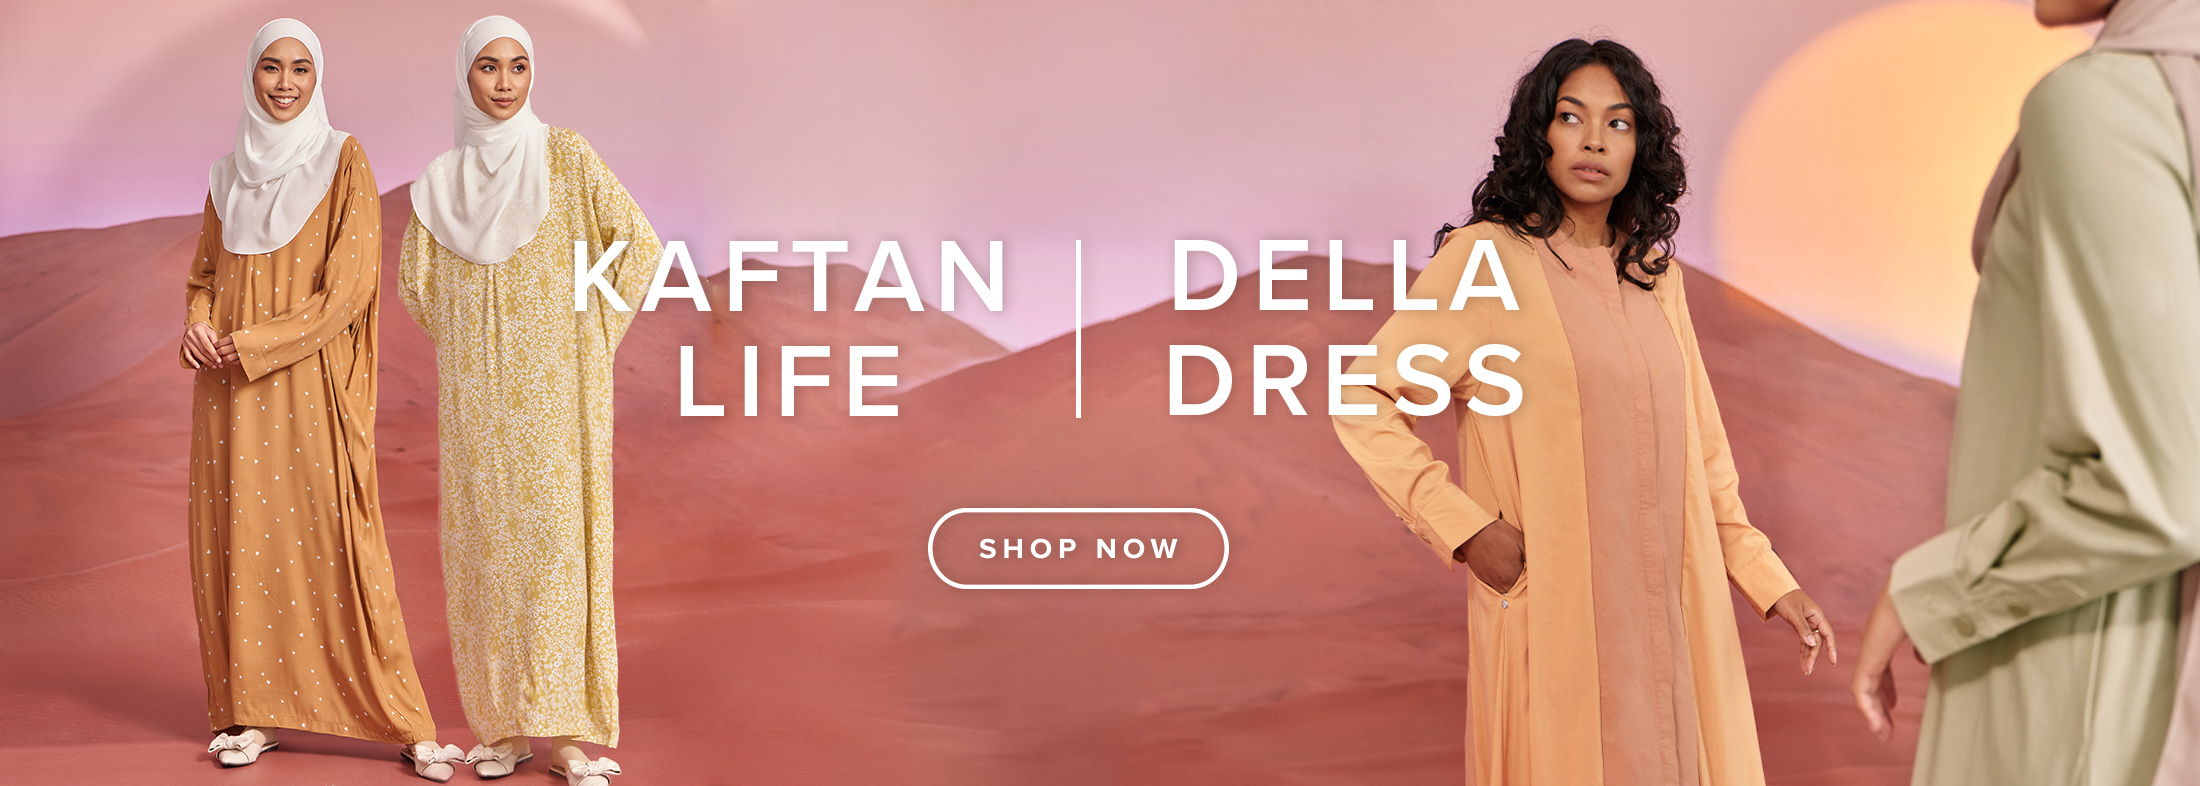 NEW IN: KAFTAN LIFE & DELLA DRESS